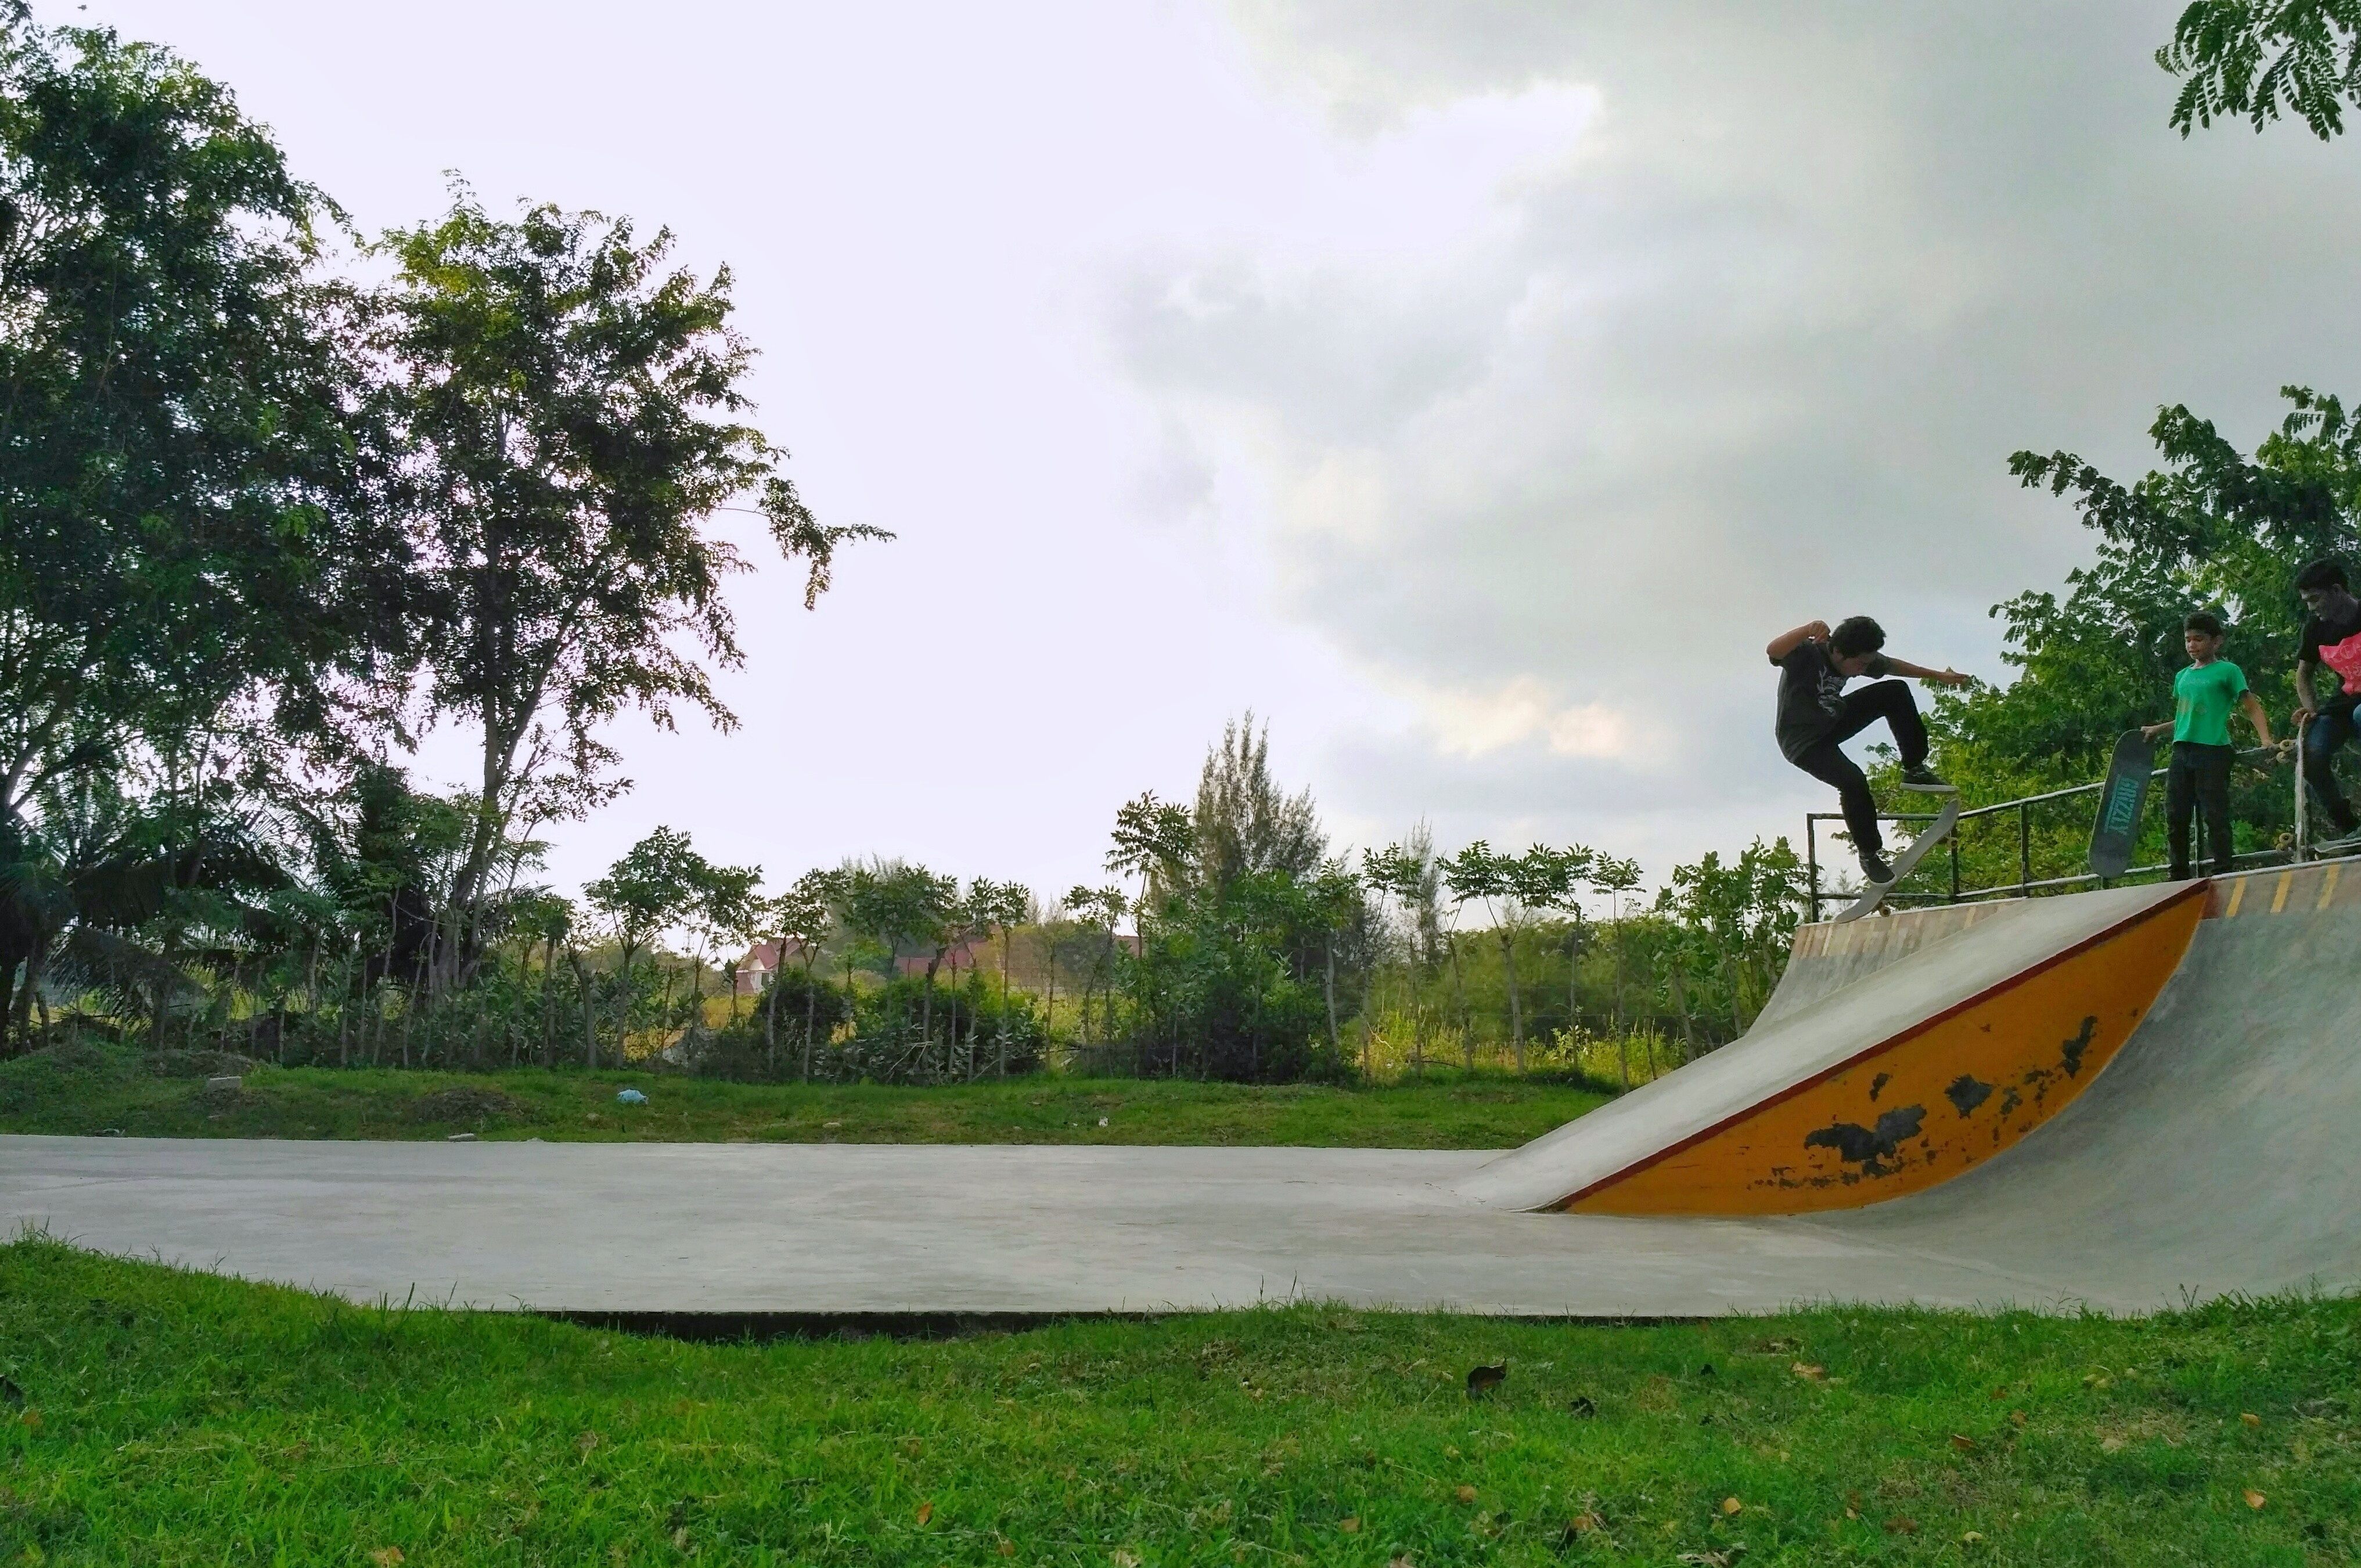 Skateboard, olahraga esktrem pemuda Banda Aceh